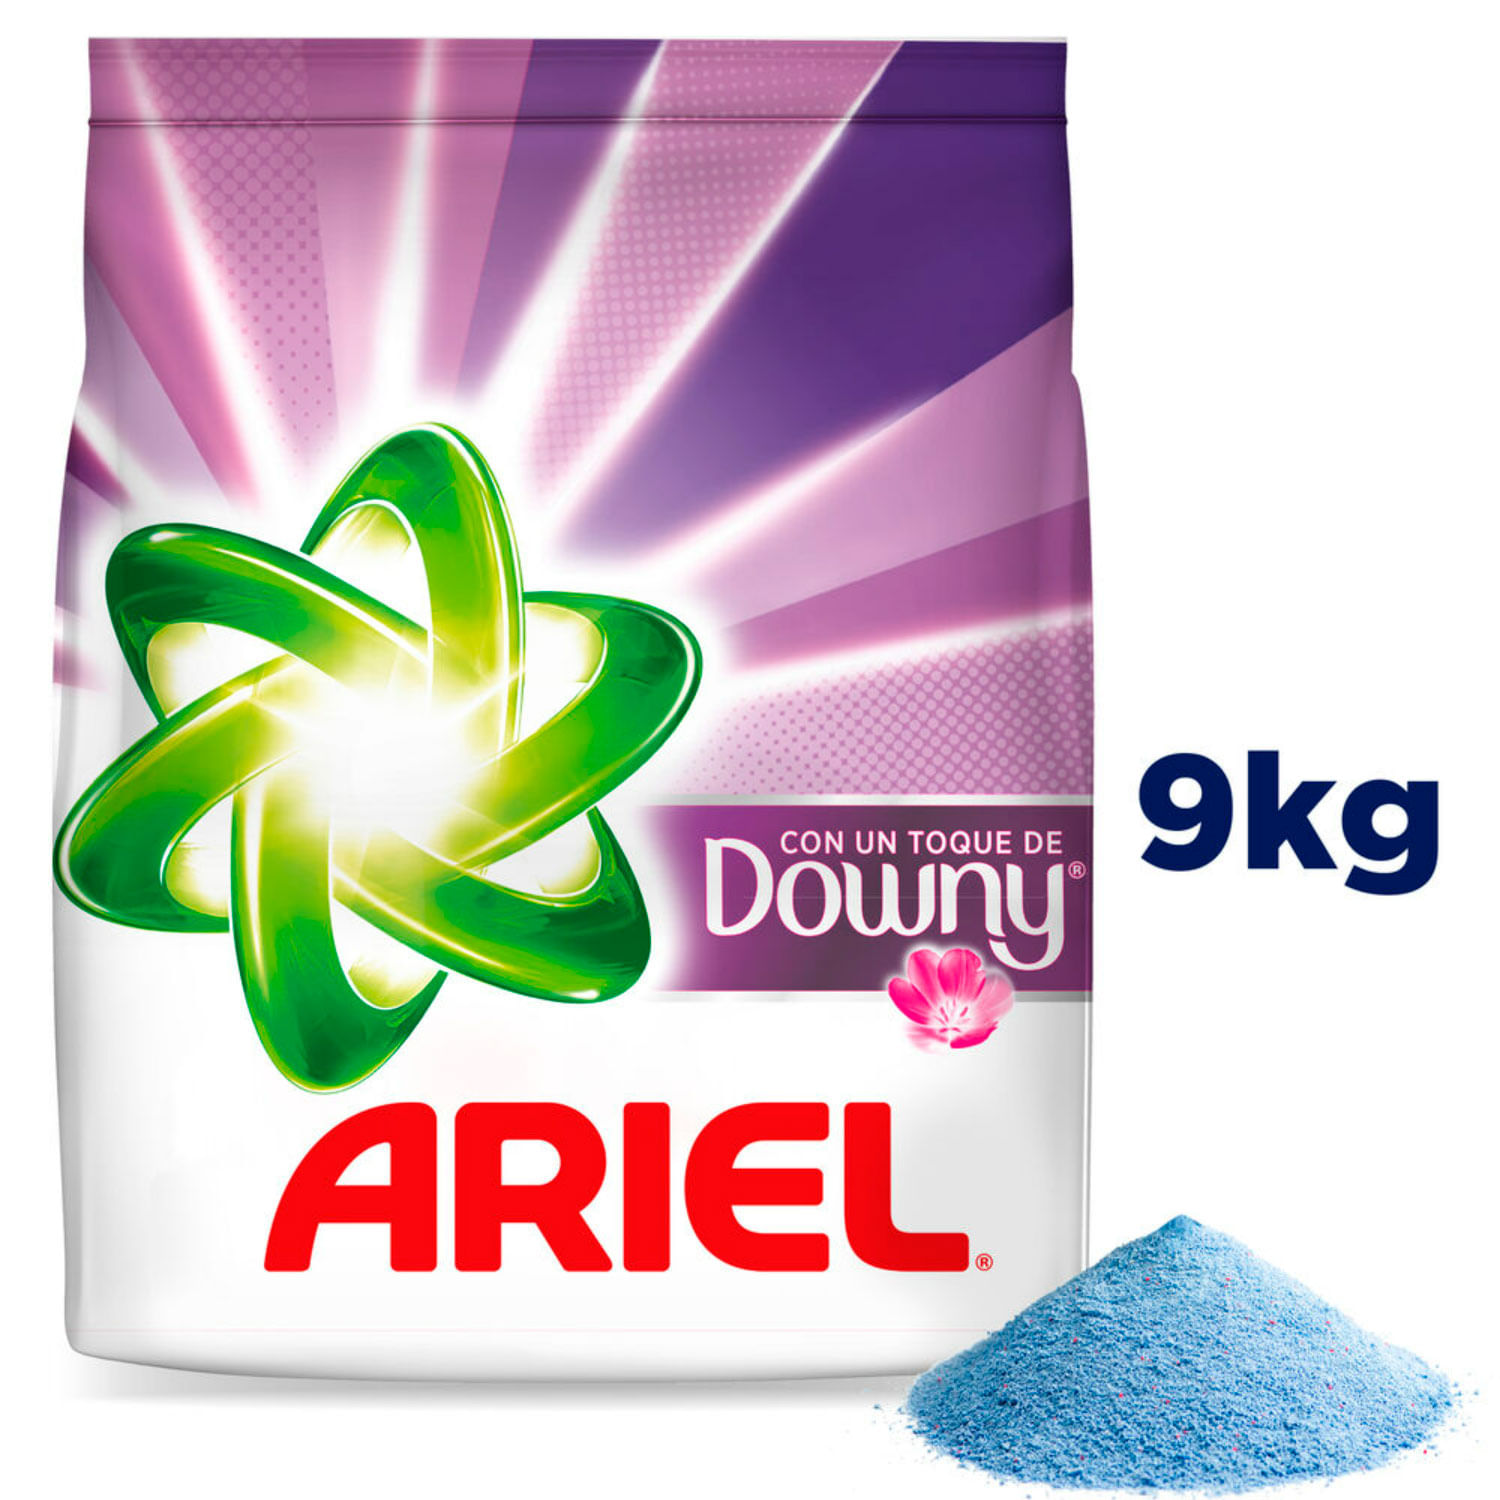 Detergente Polvo Ariel Concentrado con Suavizante Downy 9 kg